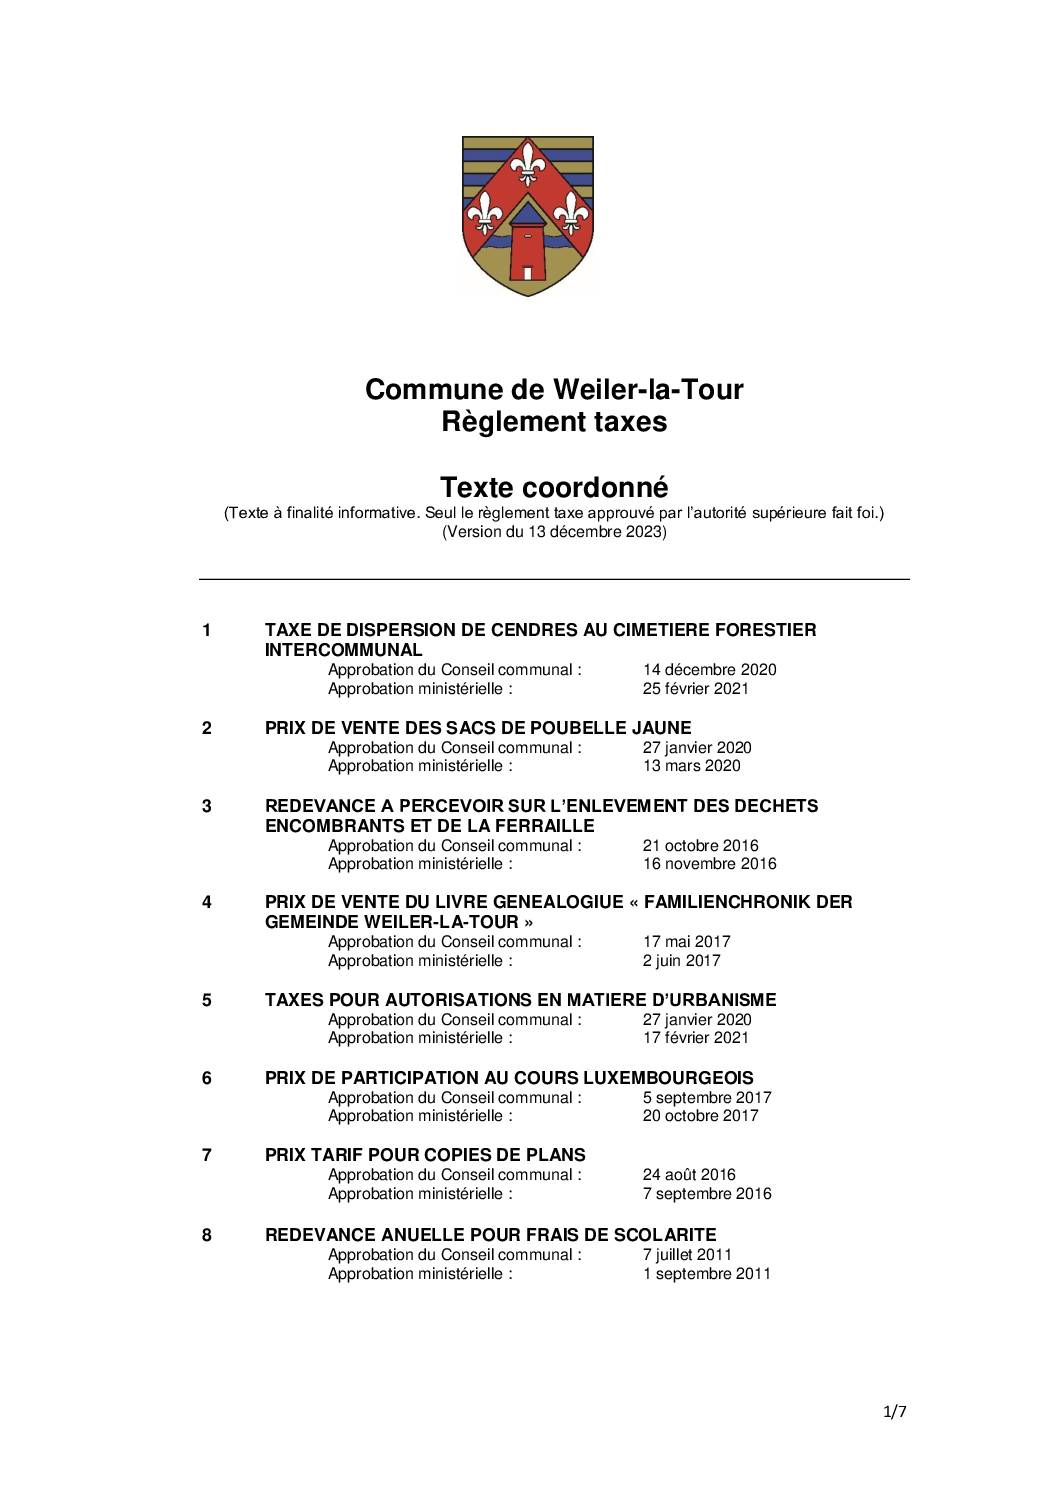 Règlement taxes de la commune de Weiler-la-Tour - Texte coordonné - 13.12.2023